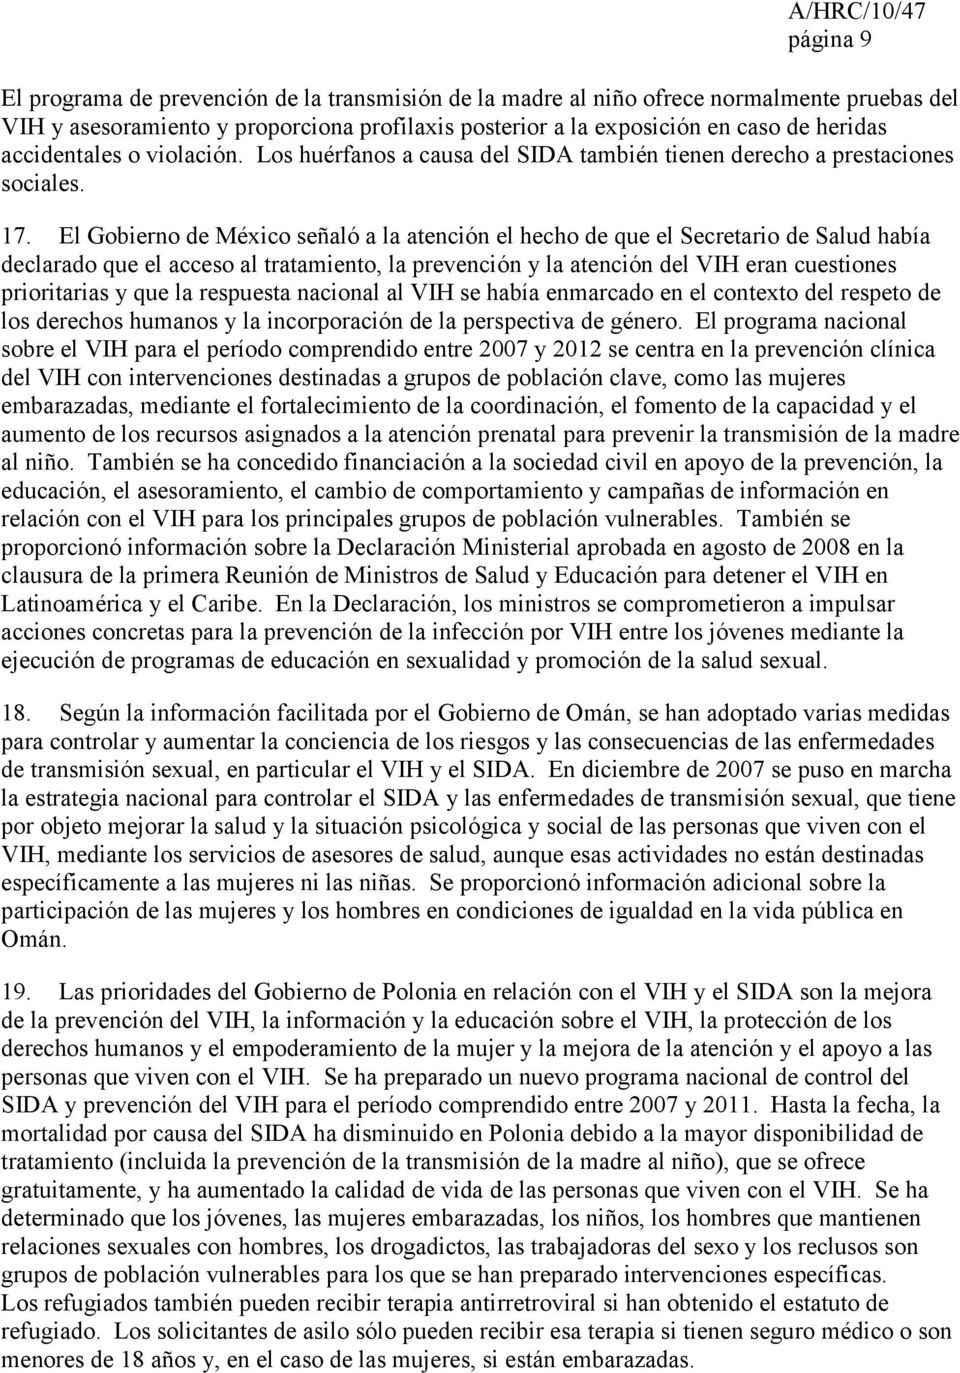 El Gobierno de México señaló a la atención el hecho de que el Secretario de Salud había declarado que el acceso al tratamiento, la prevención y la atención del VIH eran cuestiones prioritarias y que